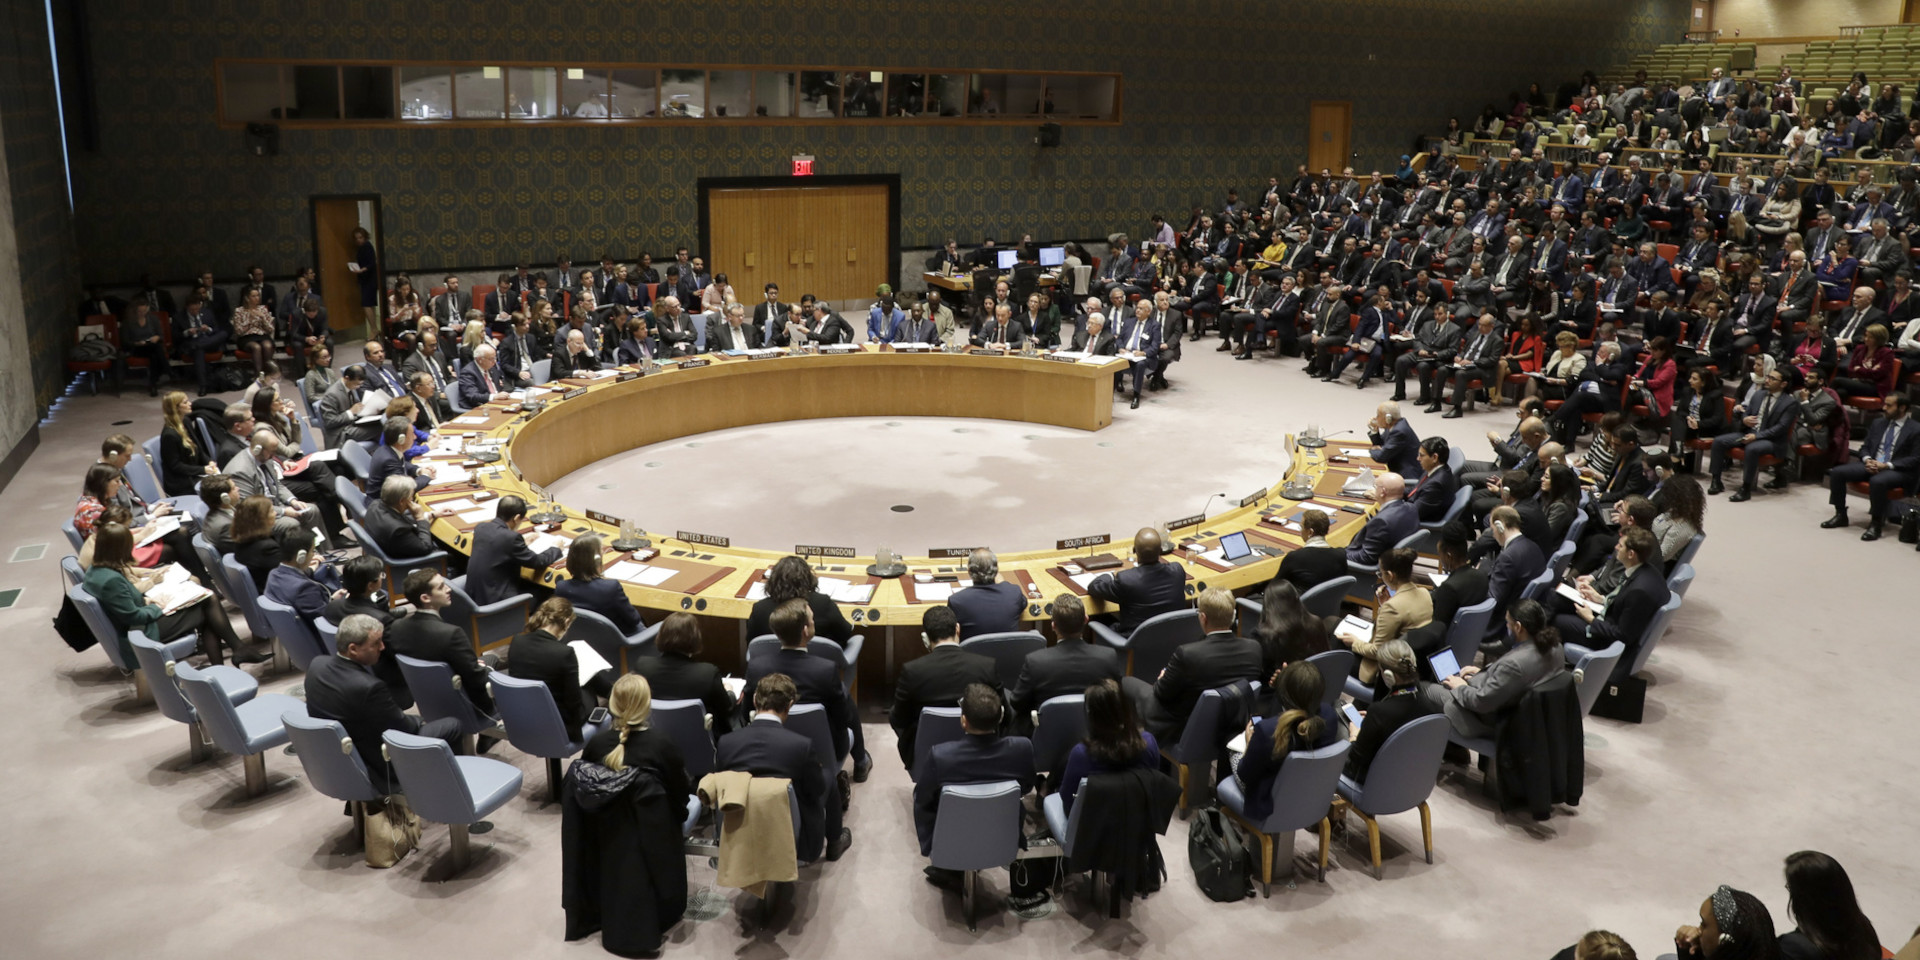 Foto del Consiglio di sicurezza dell'ONU: Uomini e donne seduti a semicerchio.